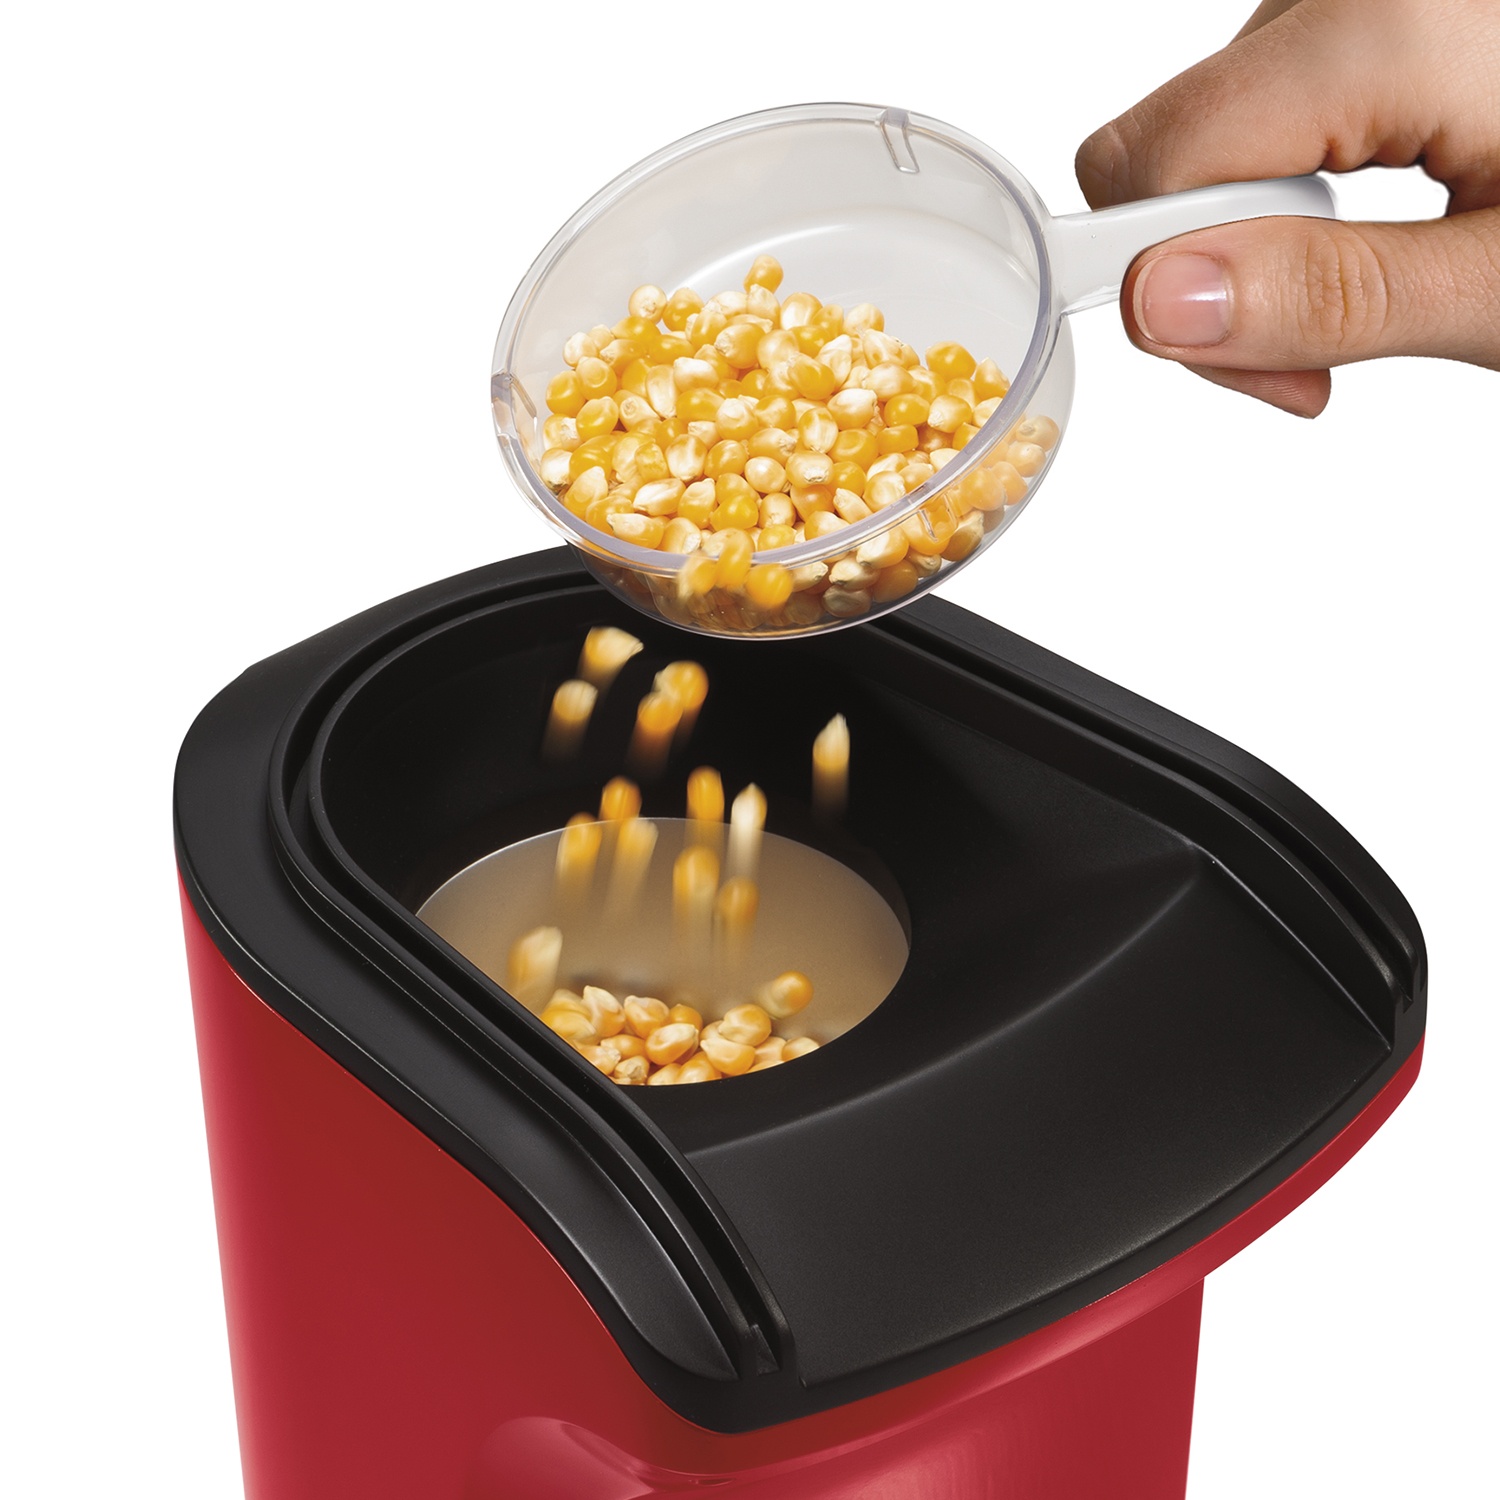 Máquina para hacer palomitas de maíz Hamilton Beach 24 tazas Roja